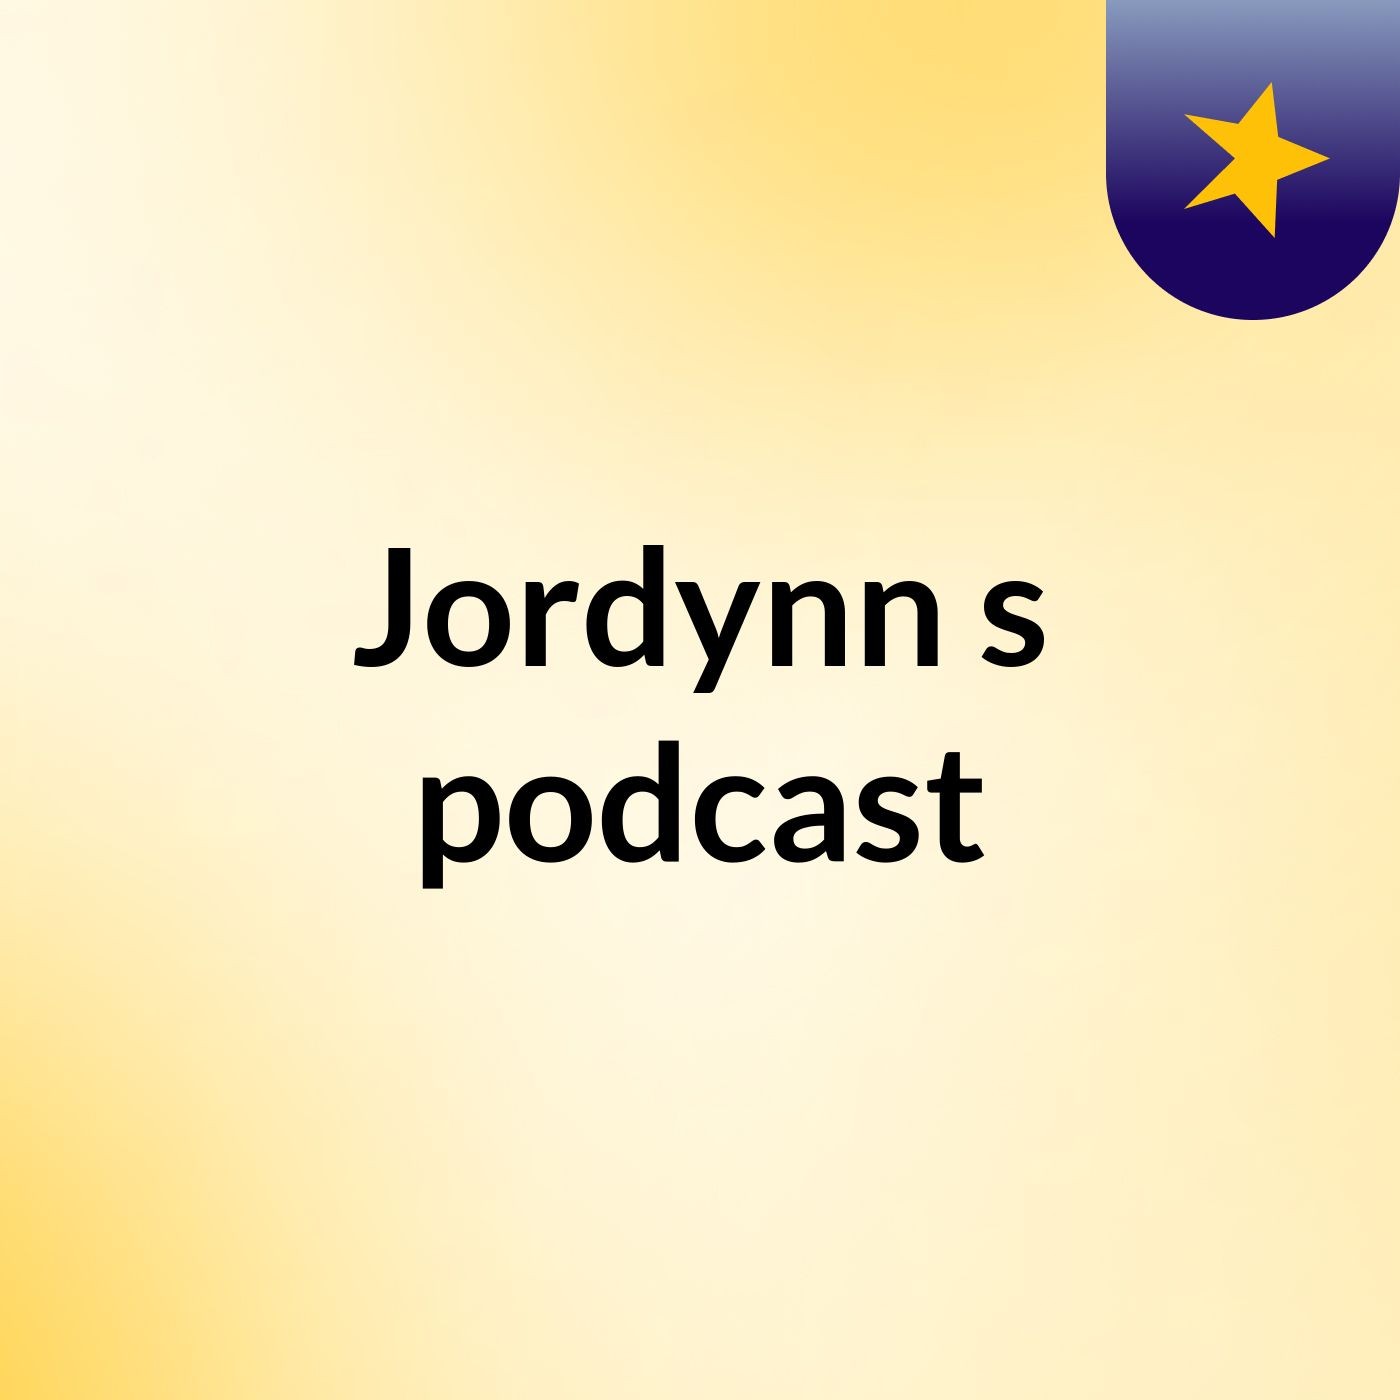 Episode 3 - Jordynn's podcast